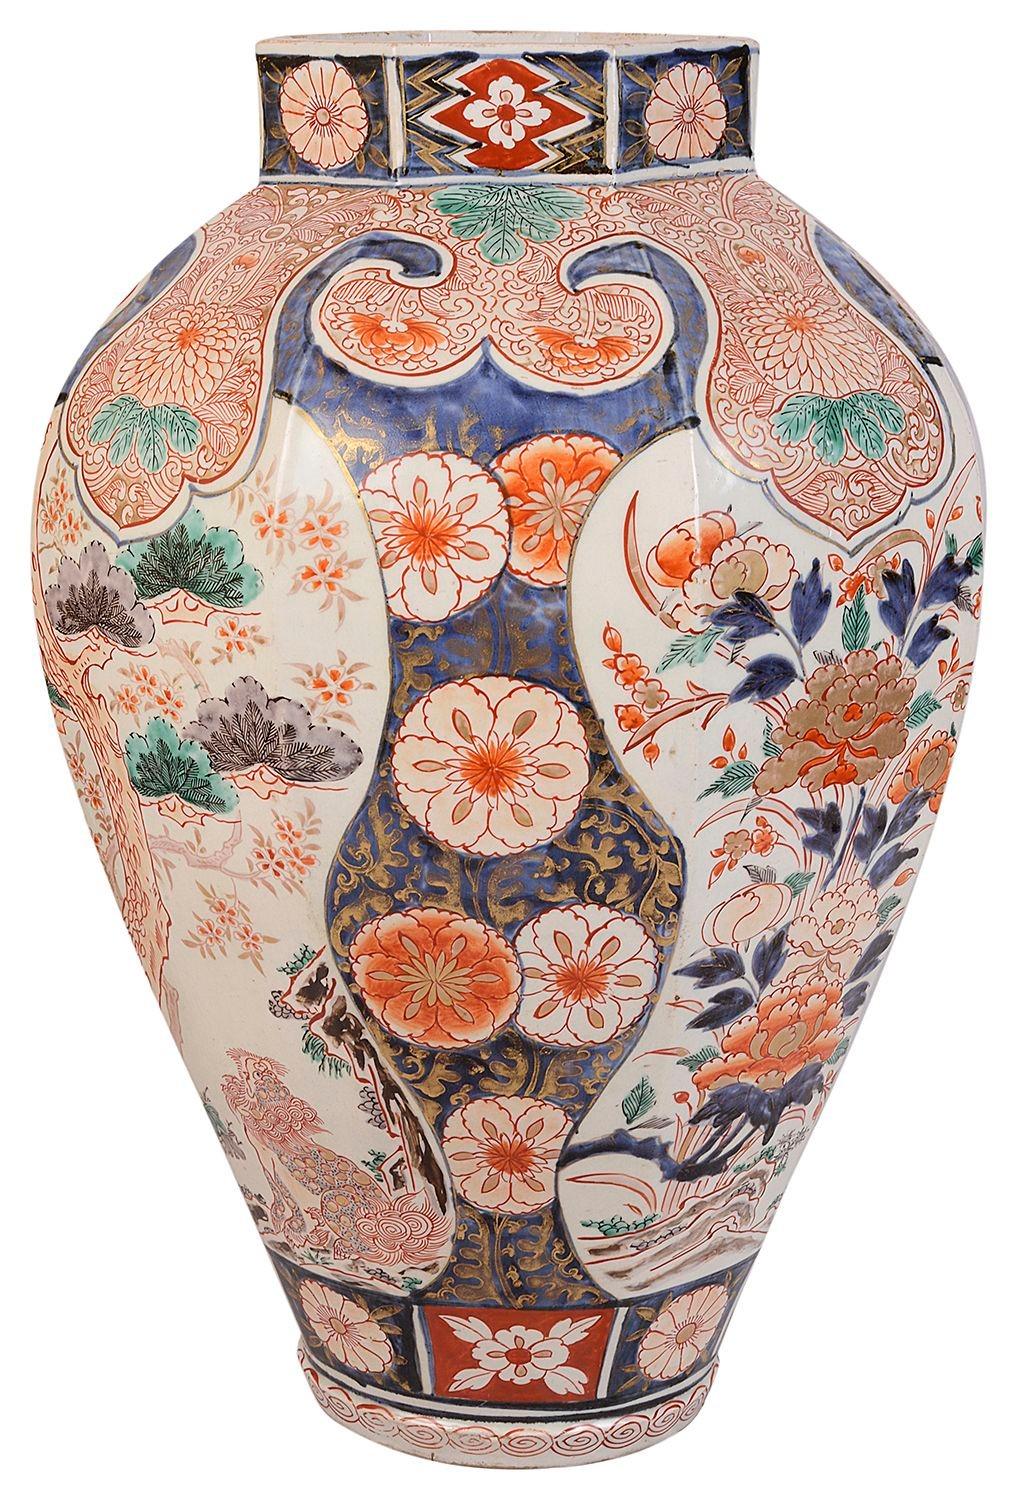 Vase / lampe Imari japonais du XVIIIe siècle, avec de magnifiques couleurs vives sur les bordures du motif et les panneaux encastrés représentant des oiseaux et des fleurs exotiques, vers 1780.
 
Lot 72